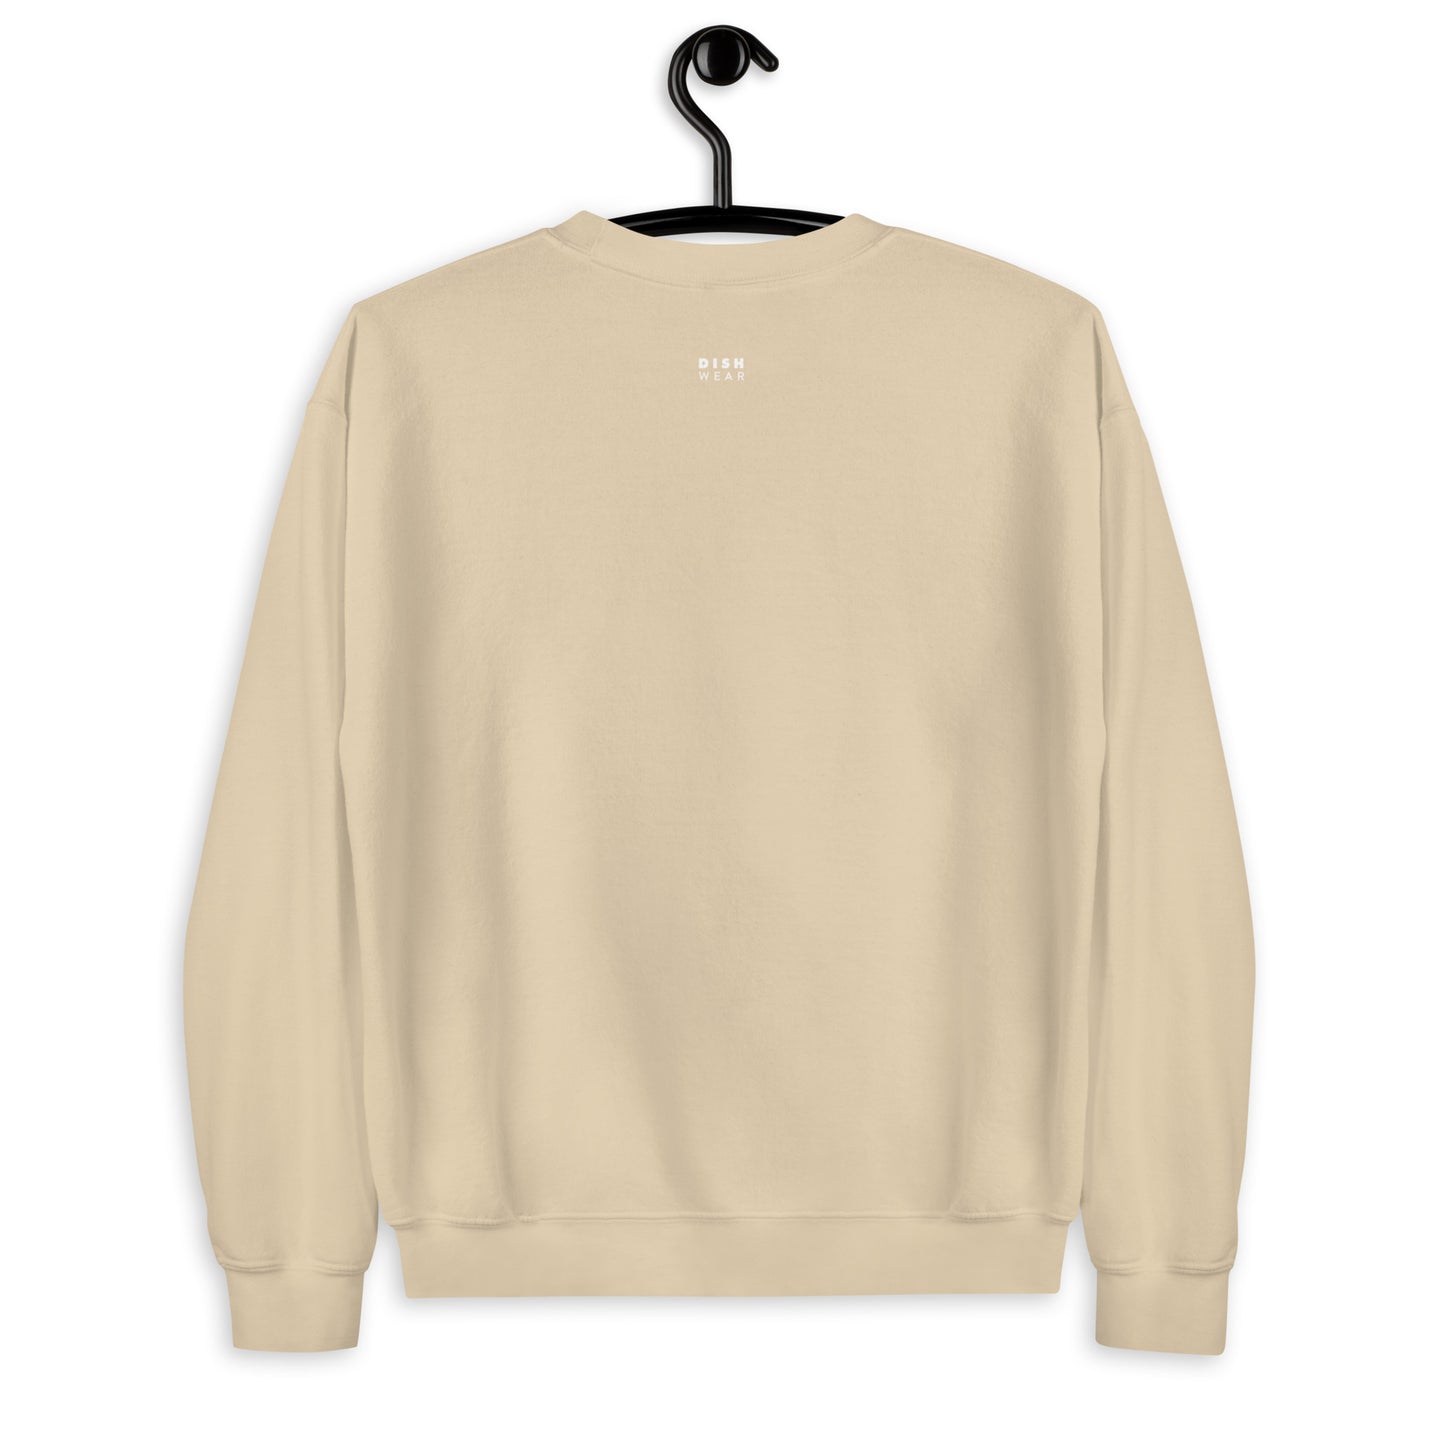 Croissant Sweatshirt - Arched Font